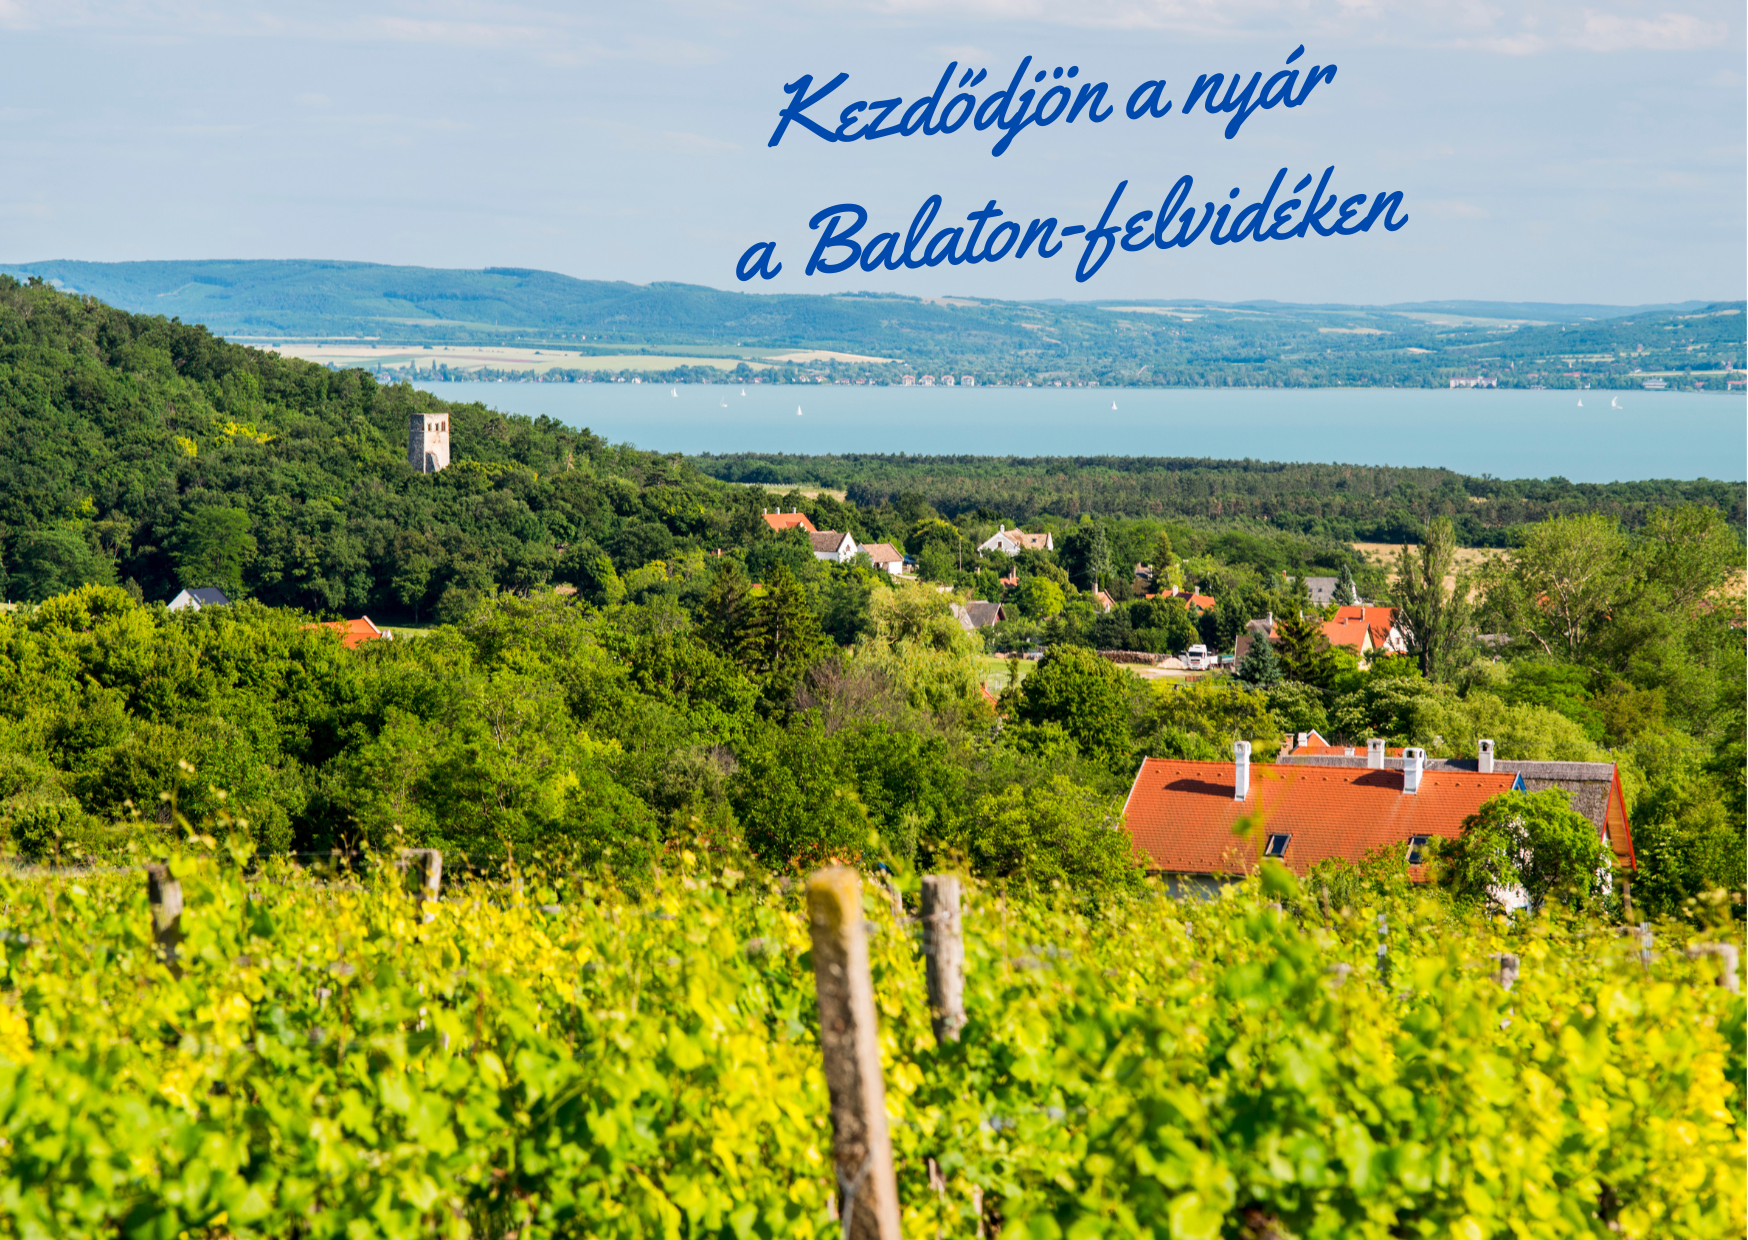 Kezdődjön a nyár a Balaton-felvidéken